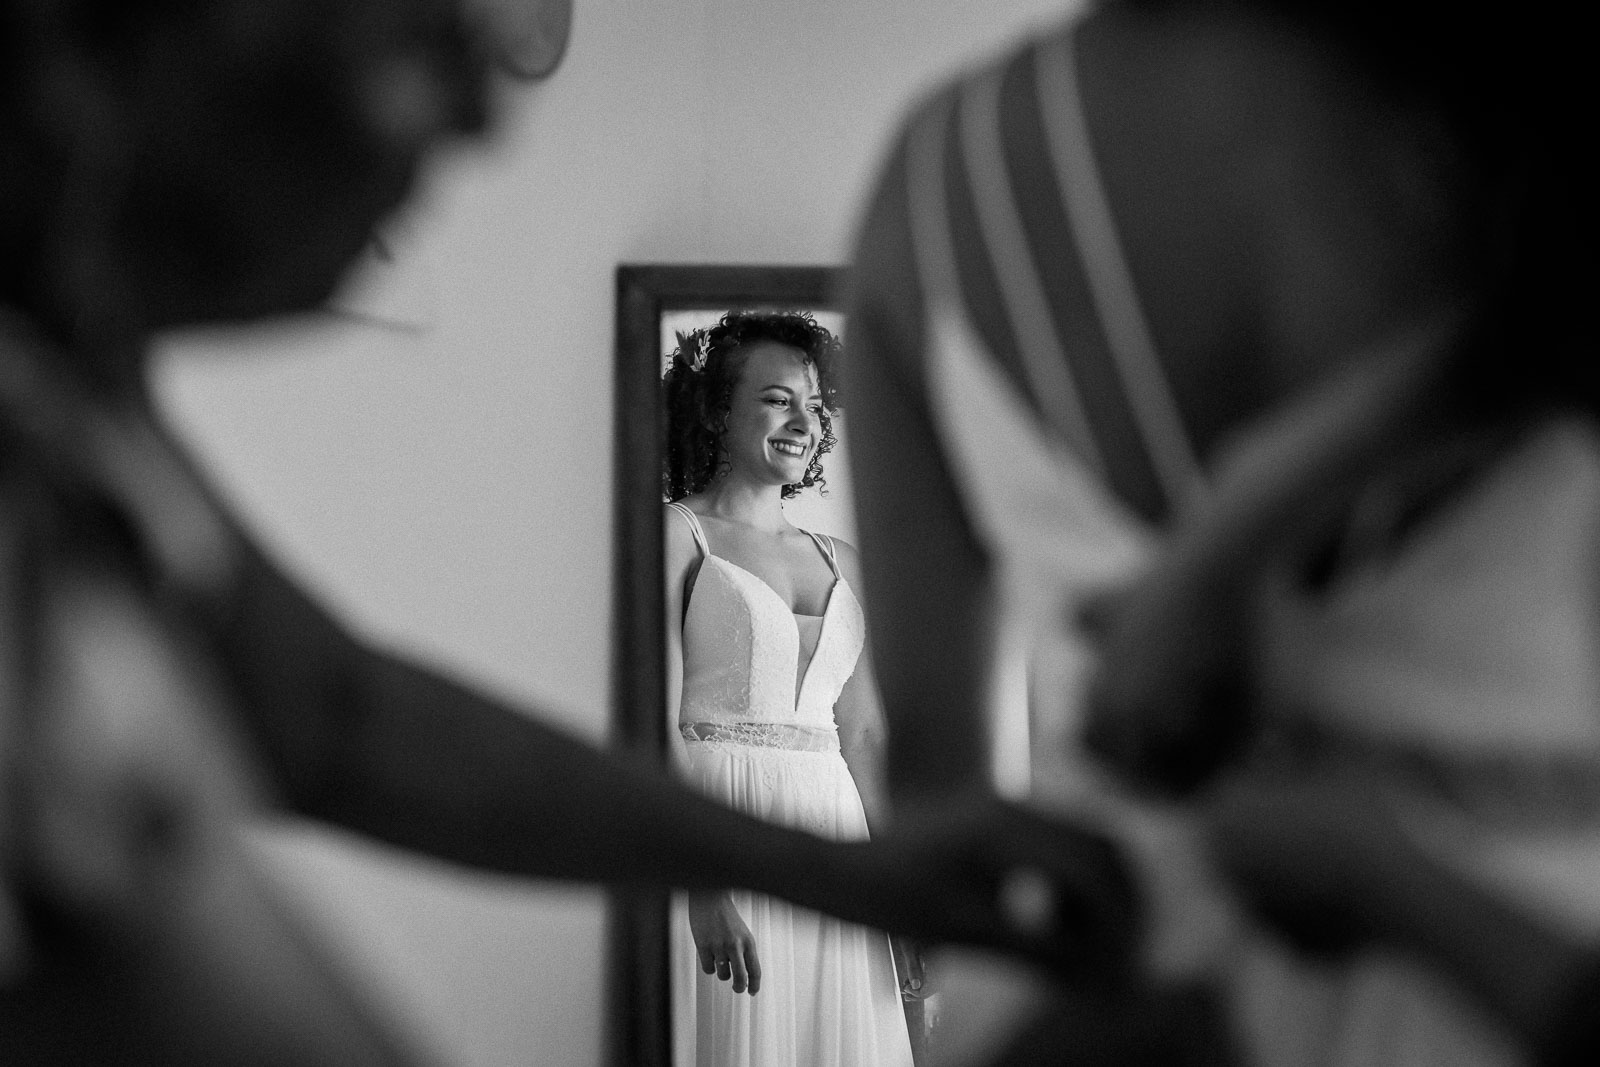 Photographie de Mathieu Dété, photographe de mariage et grossesse à Sainte-Marie, sur l'île de la Réunion 974, présentant la mariée qui sourit dans le miroir en se faisant accrocher la robe, en noir et blanc